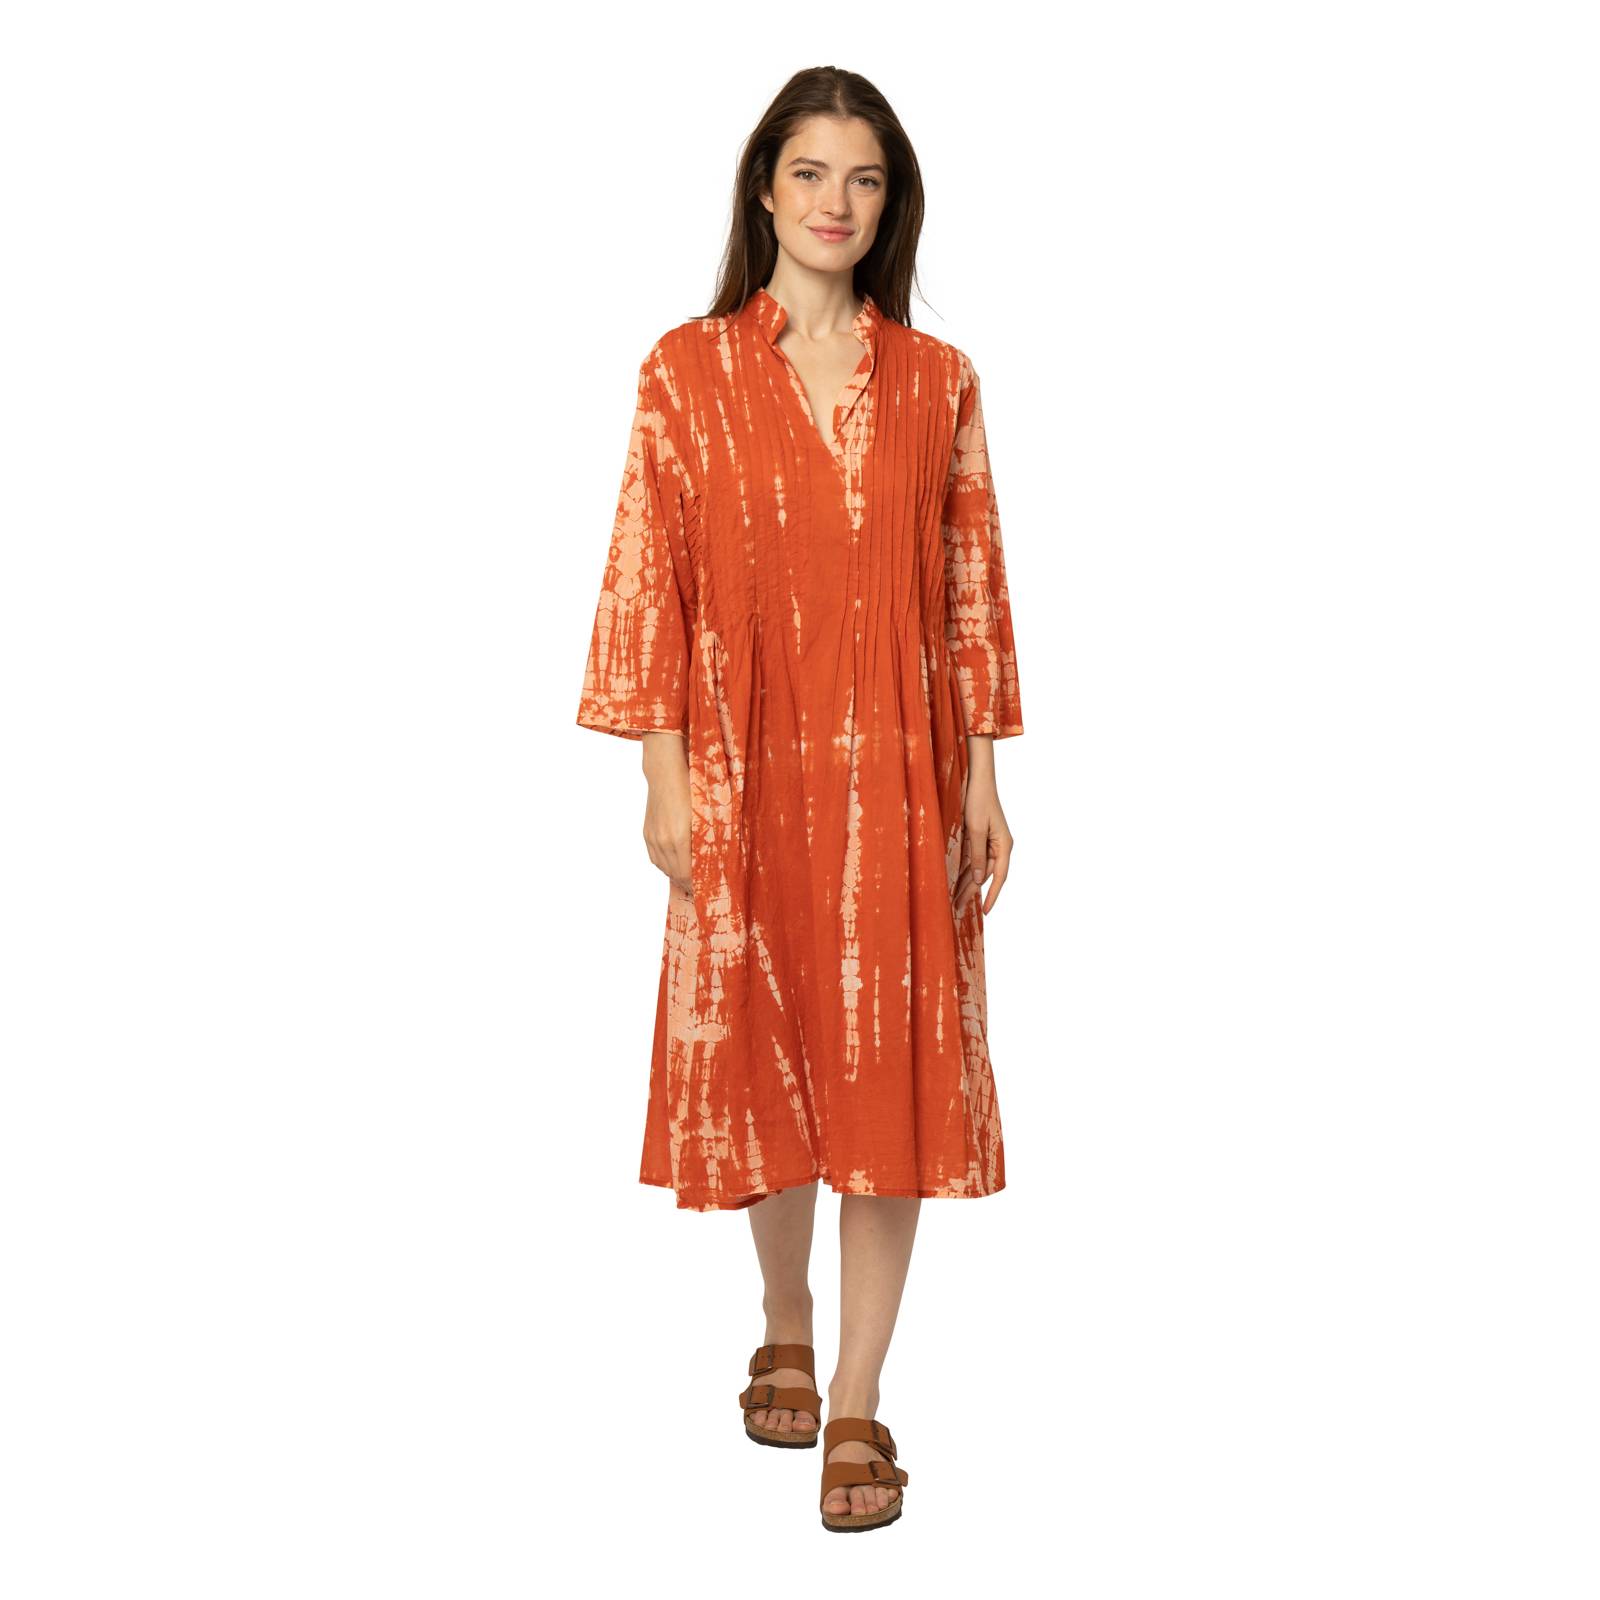 Robes Robe bohème Marie Tie & Dye - 100% Coton Ethnique VR3401 TERRACOTTA